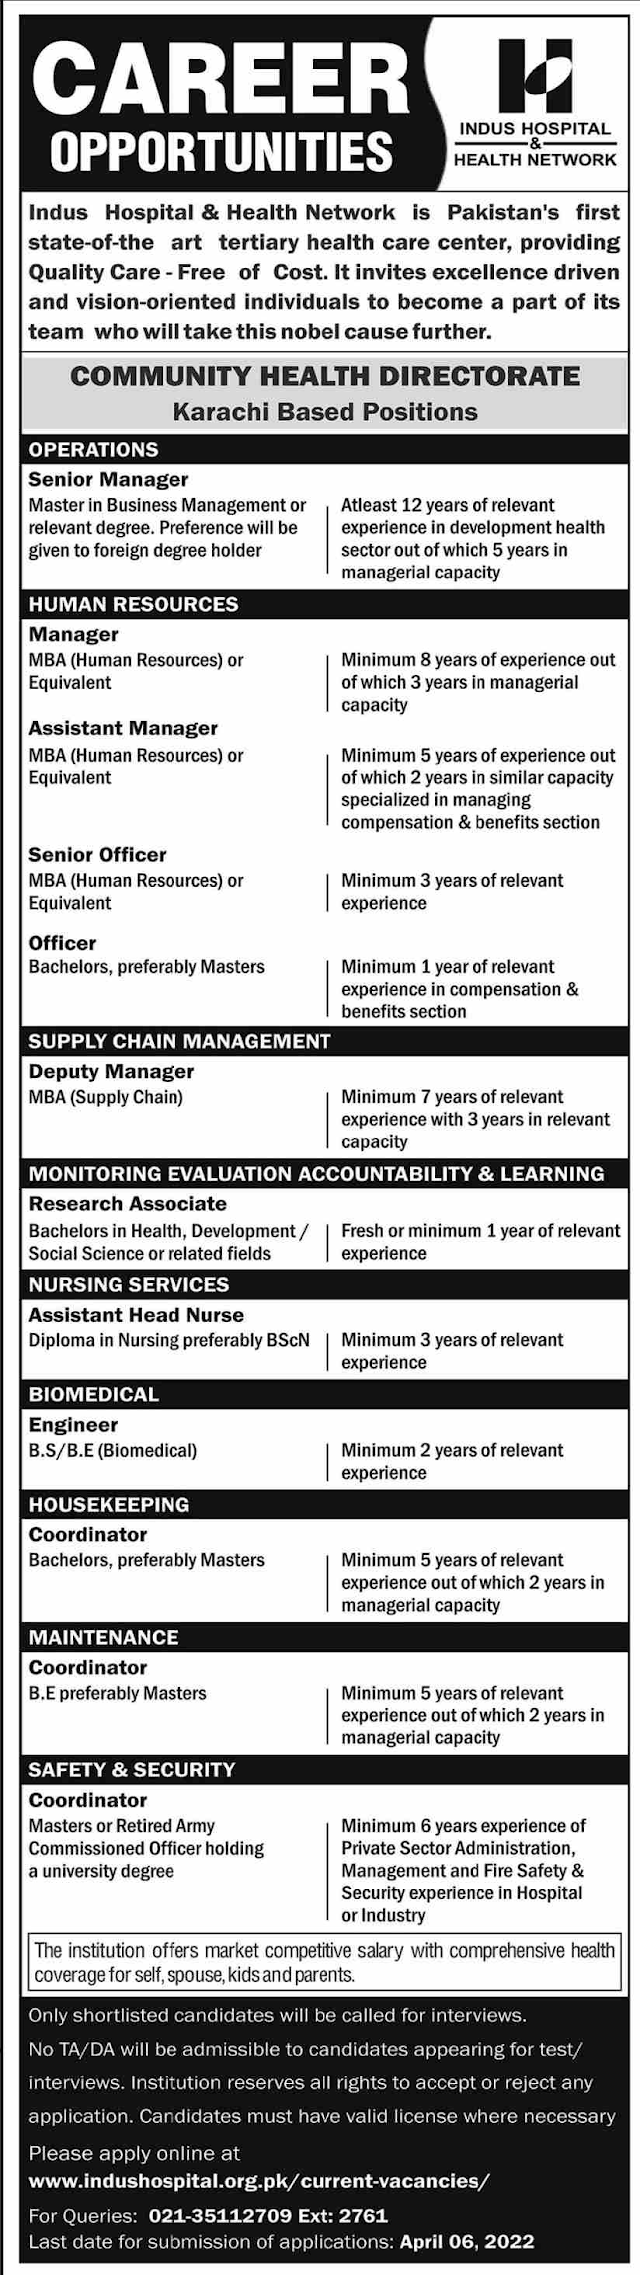 The Indus Hospital Jobs 2022